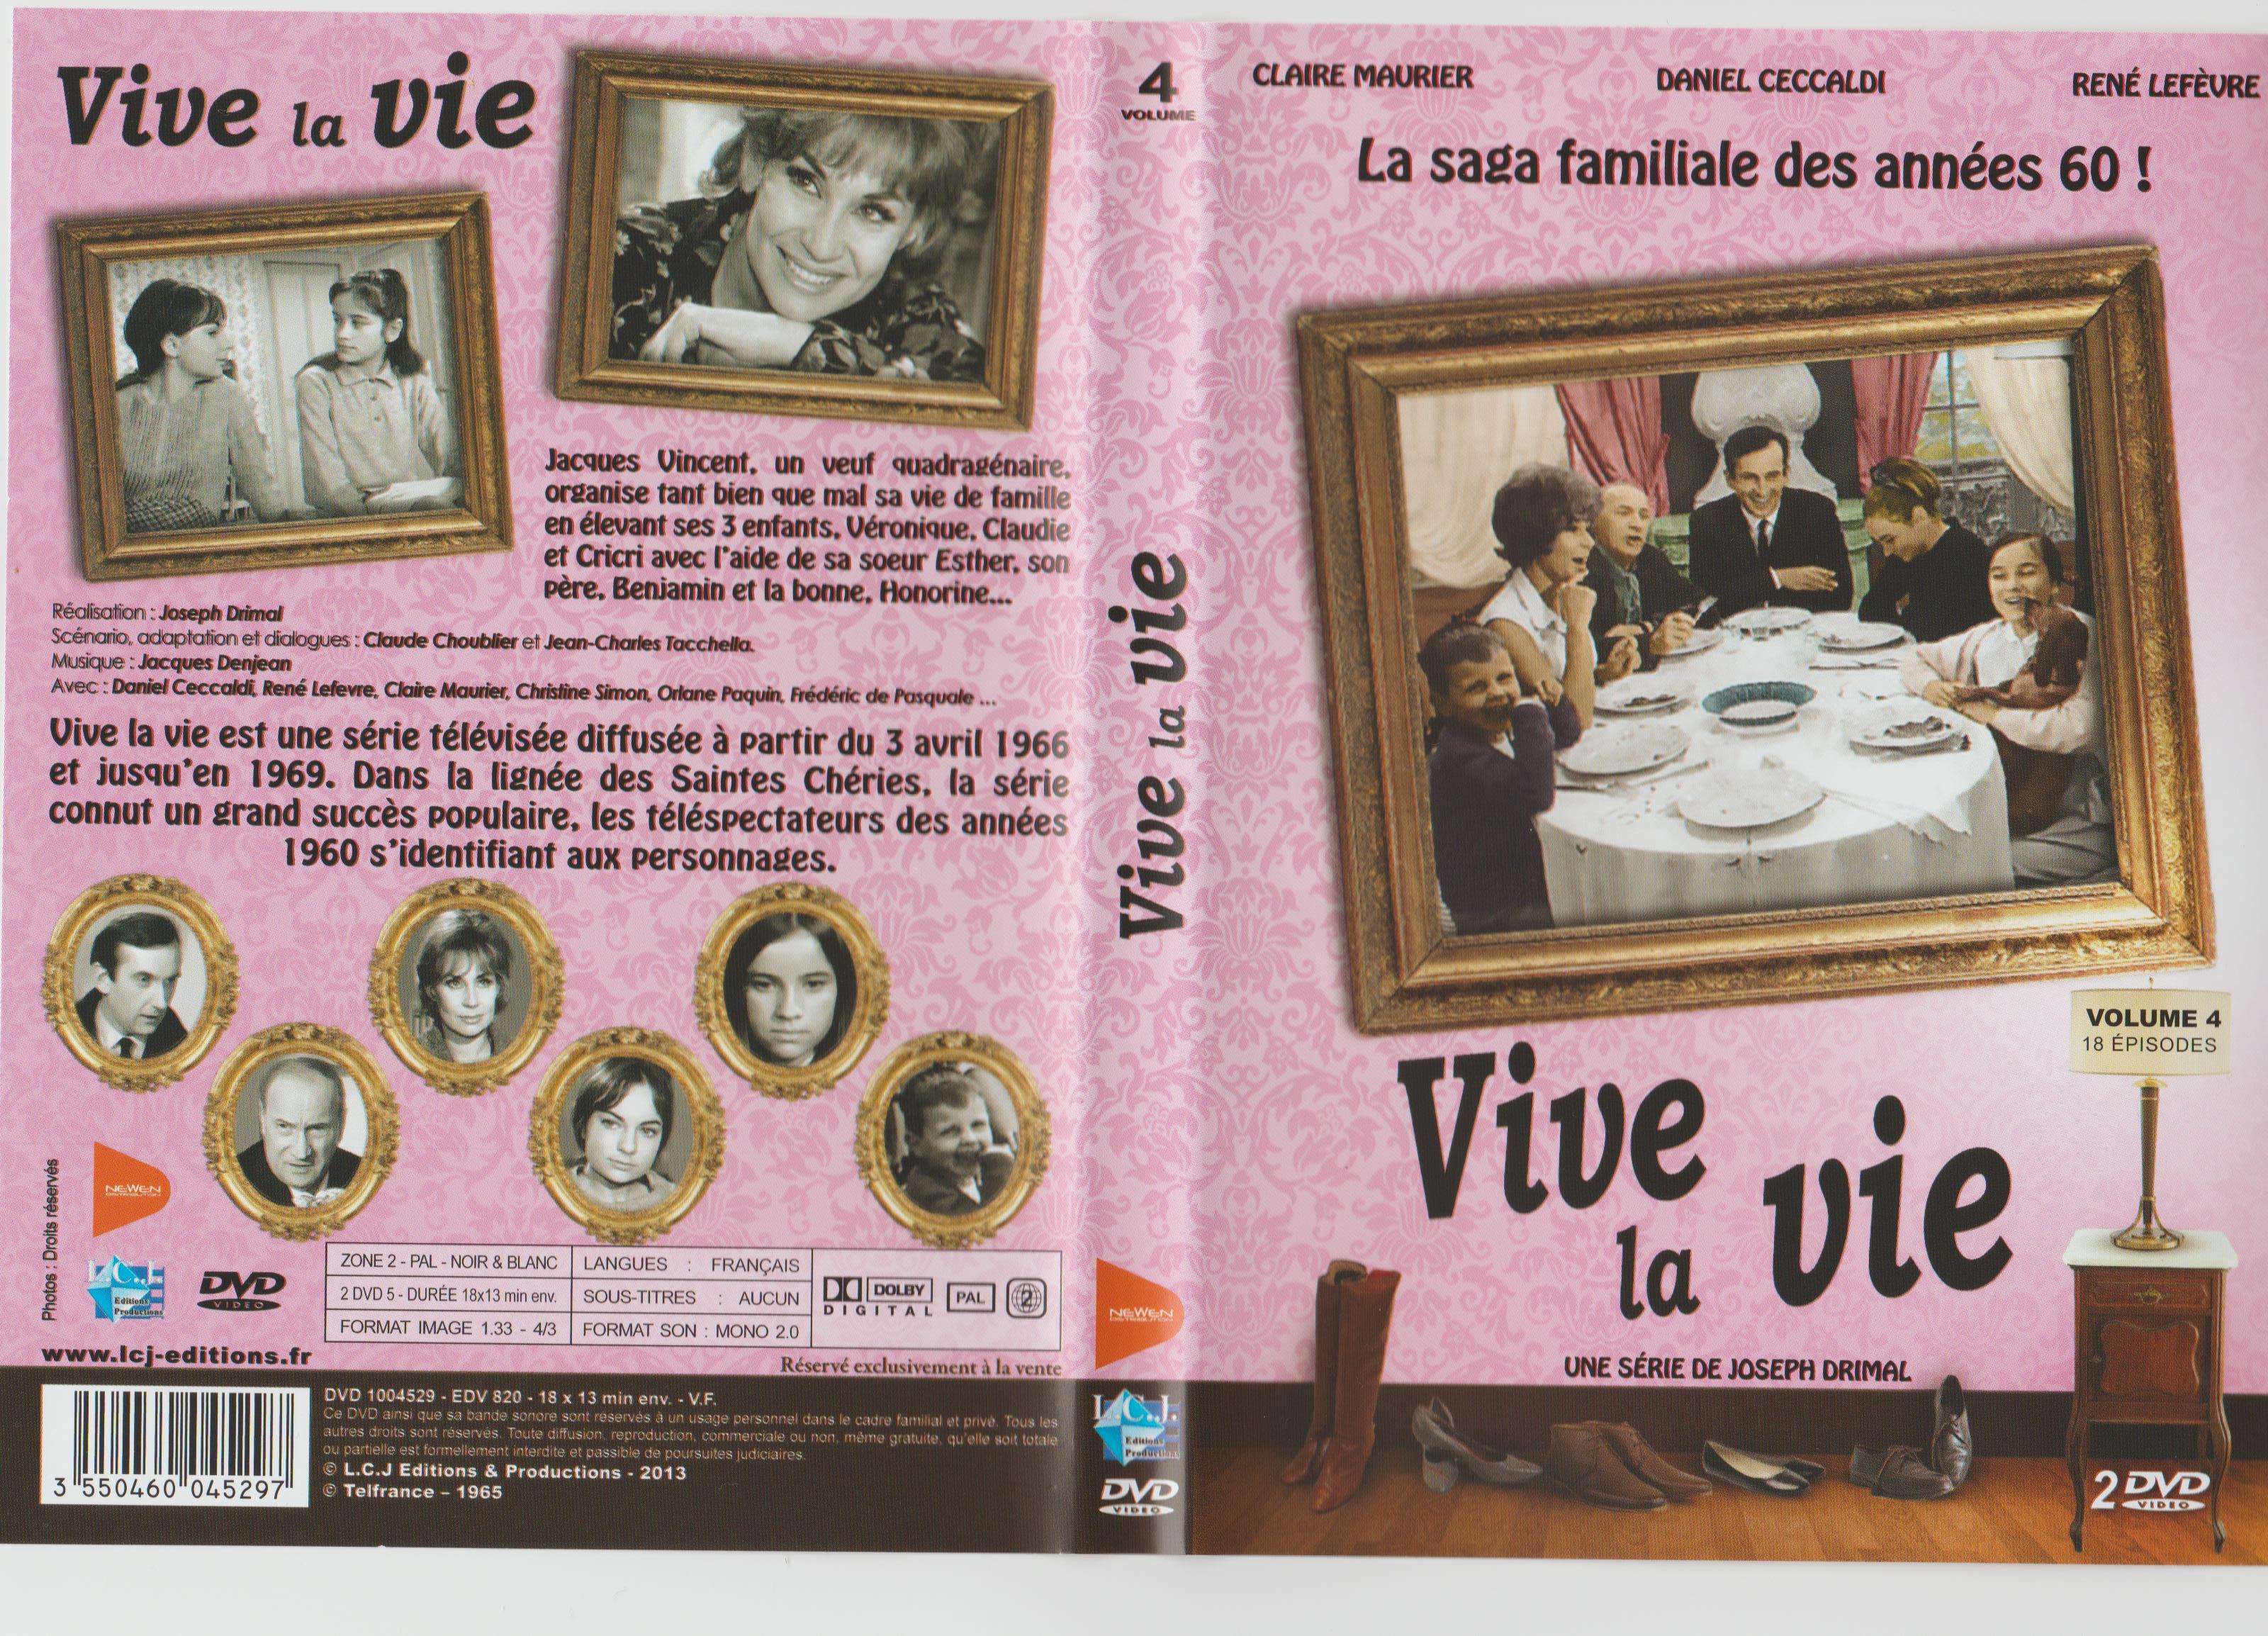 Jaquette DVD Vive la vie vol 04